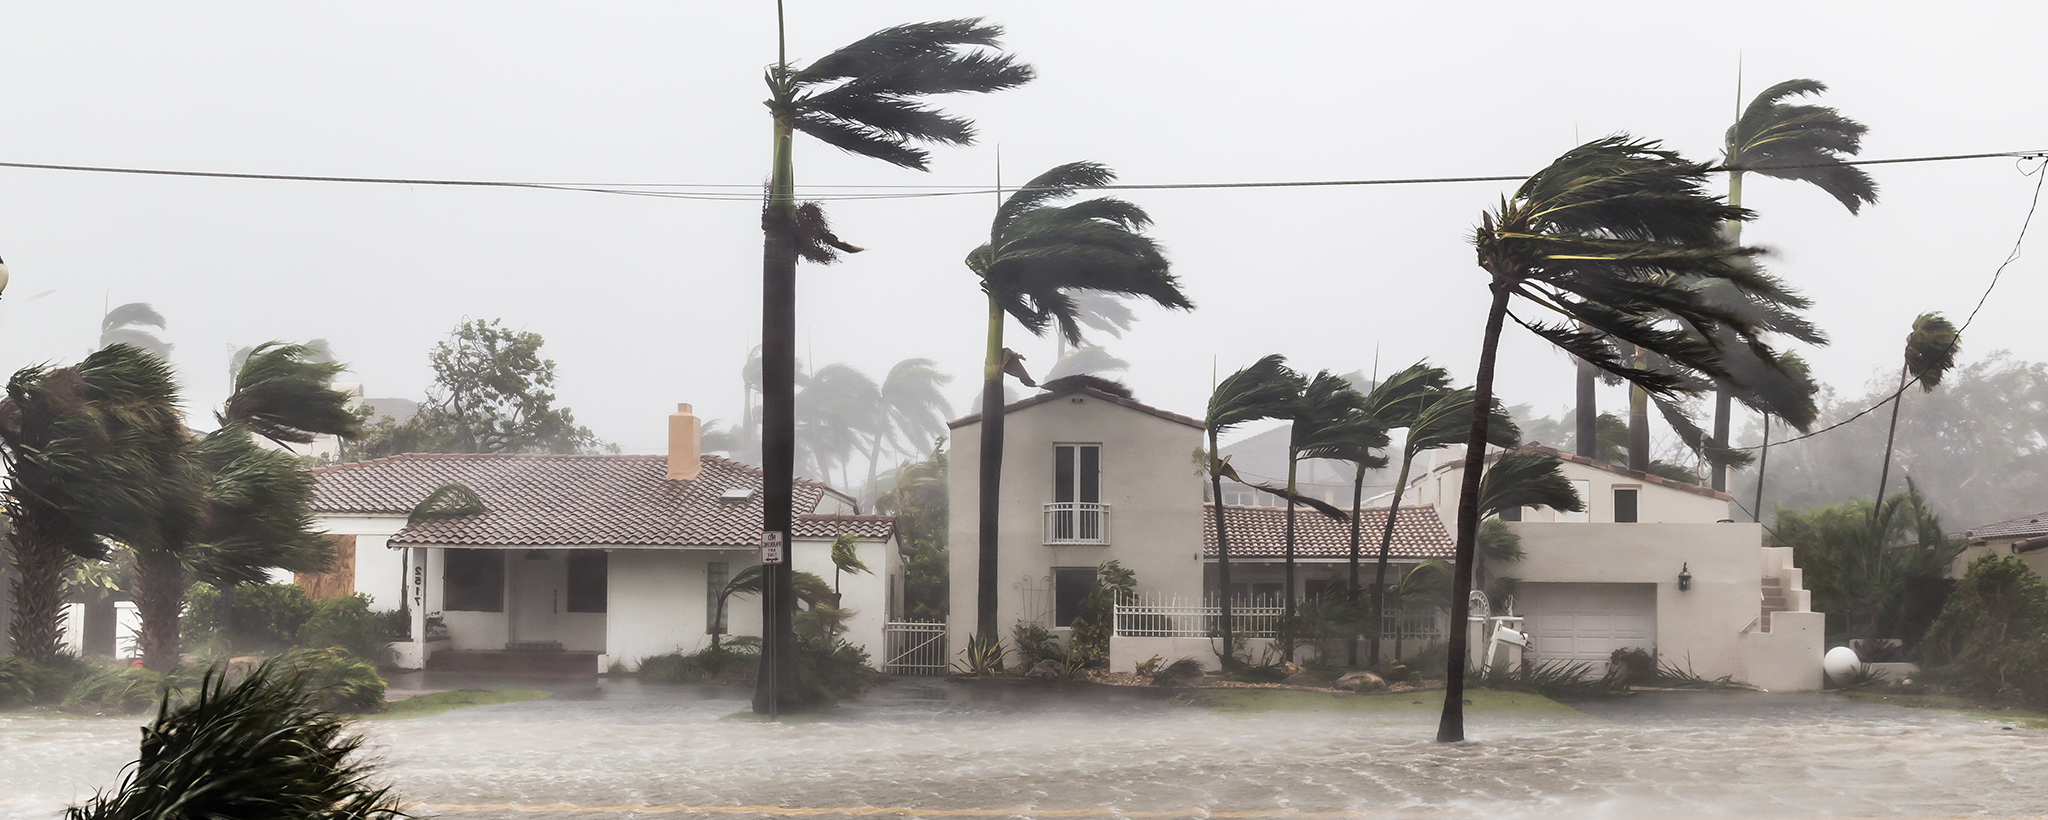 Se muestra una casa, mientras caen fuertes lluvias y fuertes vientos golpean con fuerza las palmeras.